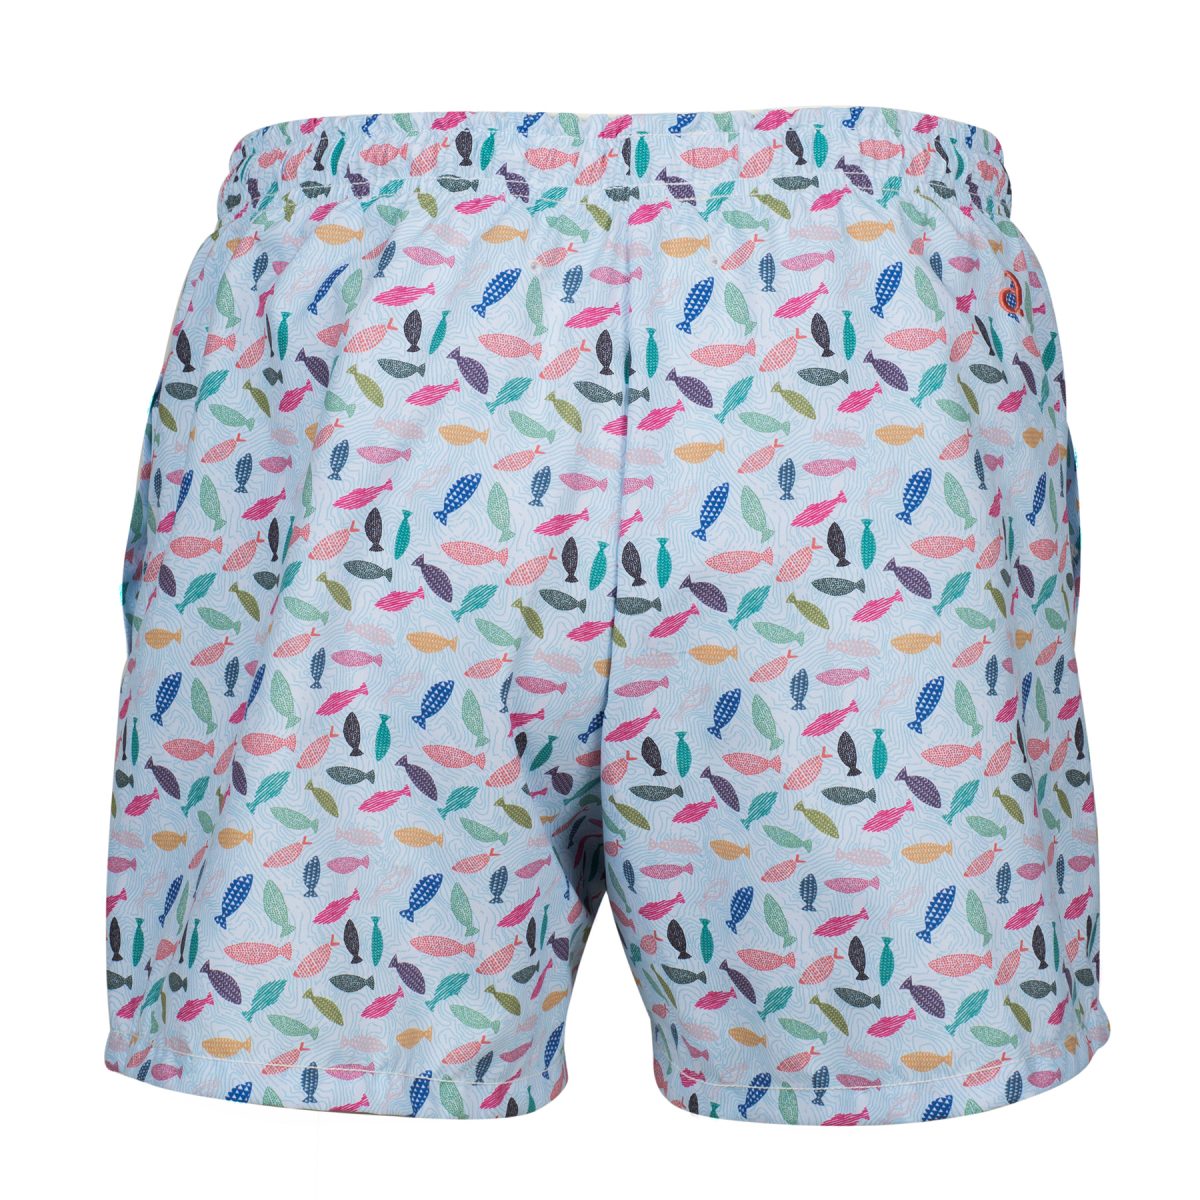 Freshwater Fish Swimwear | antidot’s signature design – antidot